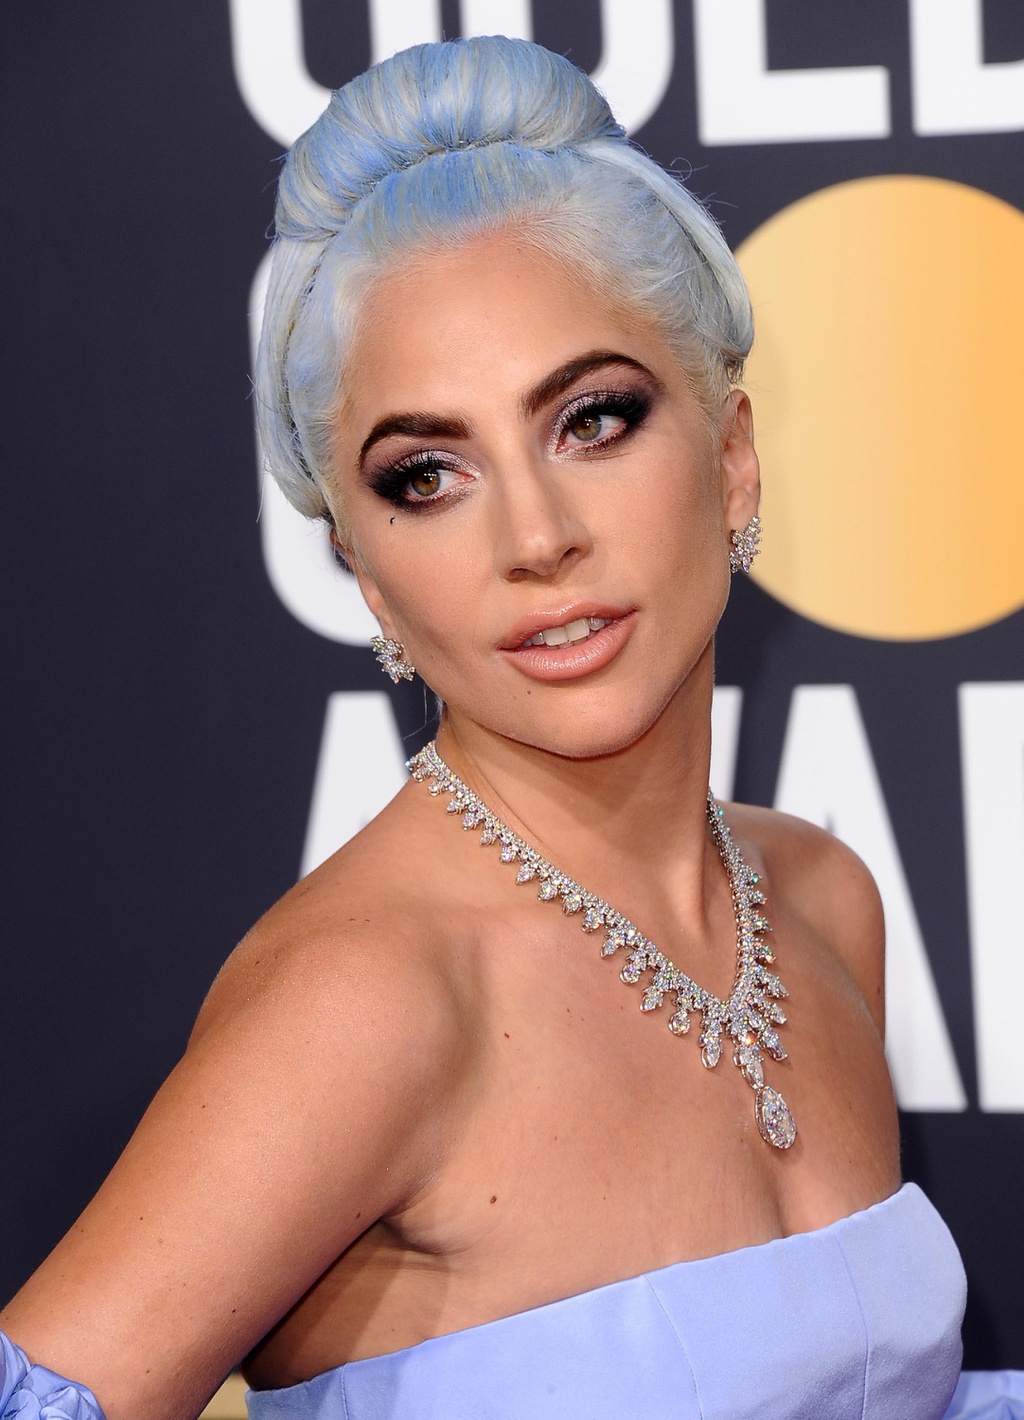 Lady Gaga xinh đẹp lộng lẫy với set trang sức kim cương đầy tính tỉ mỉ, công phu tại lễ trao giải Quả Cầu vàng năm 2019. Cô diện một bộ cánh với tông màu xanh tím nhẹ nhàng dáng cúp ngực vô cùng quyến rũ, dễ dàng khoe chiếc vòng cổ đính kim cương với nhiều họa tiết tỉ mỉ, cũng không quên 'chốt' lại cả set với một đôi bông tai ôm sát vành tai.